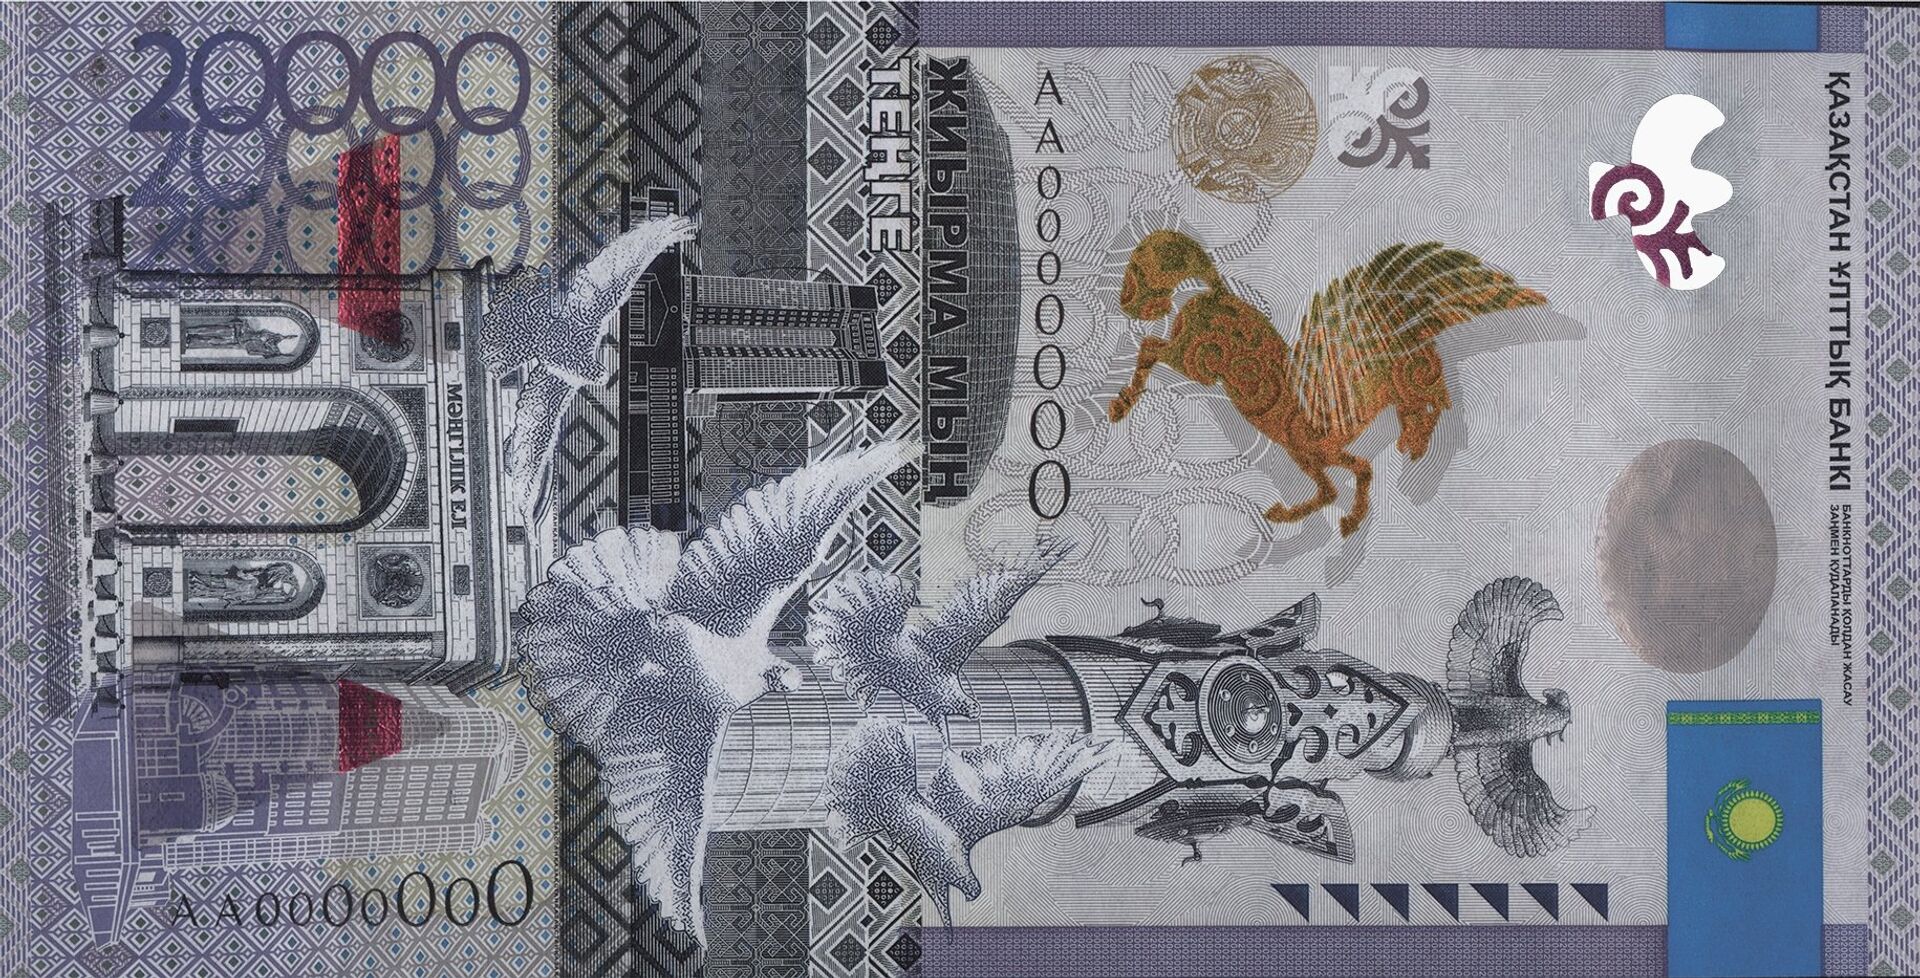 Памятные банкноты являются законным платежным средством - Нацбанк - Sputnik Казахстан, 1920, 13.07.2021